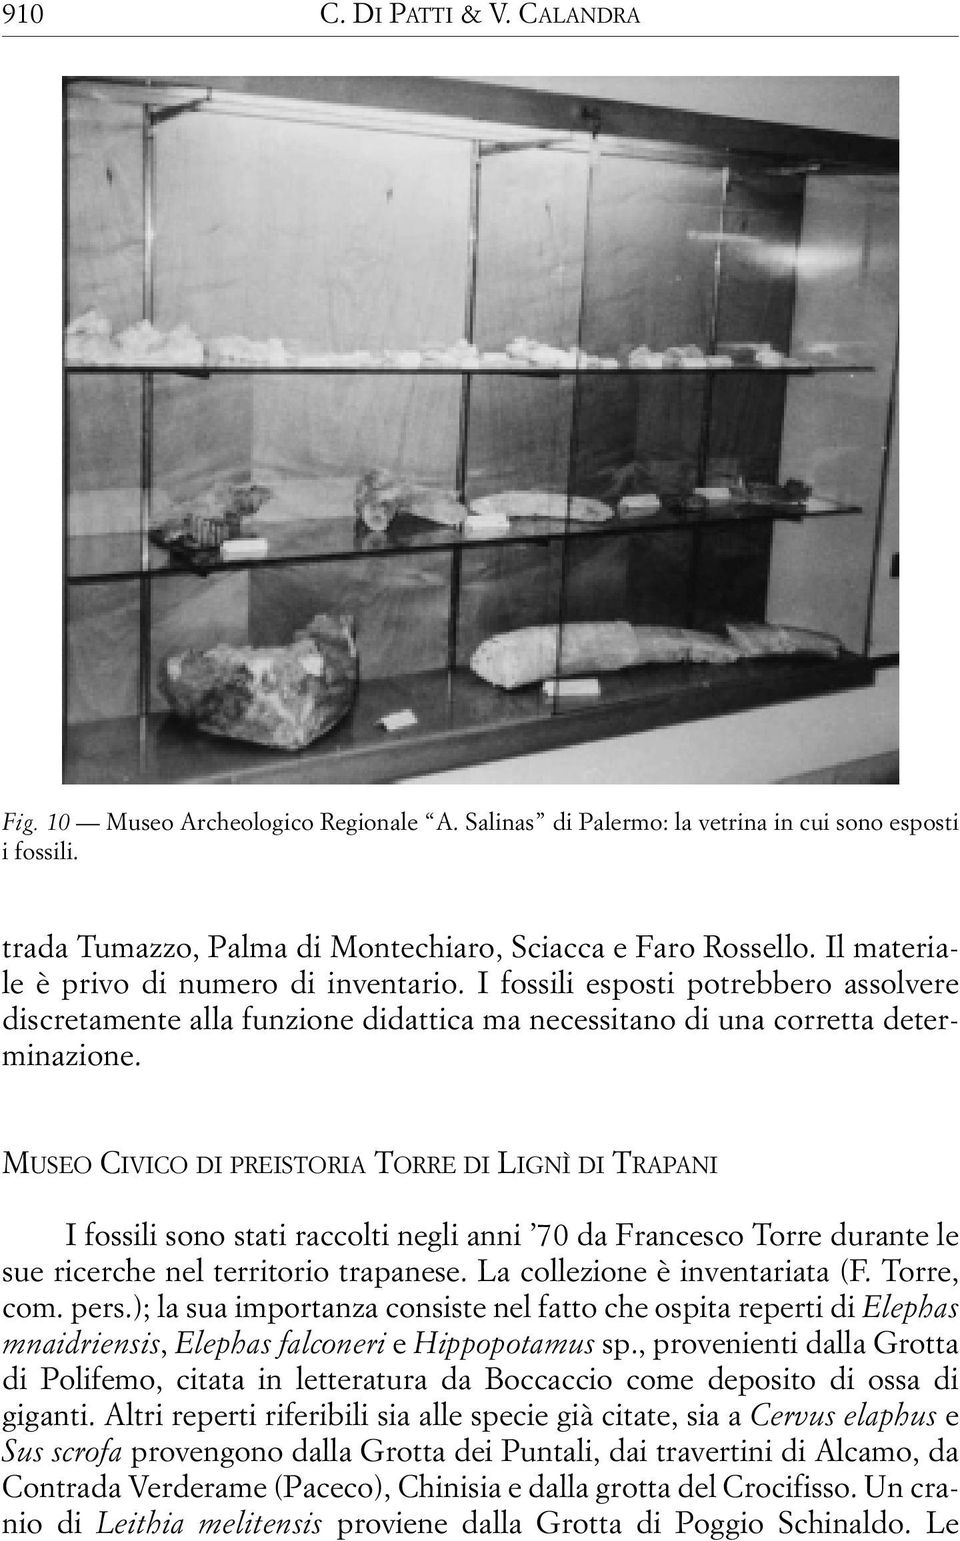 MUSEO CIVICO DI PREISTORIA TORRE DI LIGNÌ DI TRAPANI I fossili sono stati raccolti negli anni 70 da Francesco Torre durante le sue ricerche nel territorio trapanese. La collezione è inventariata (F.